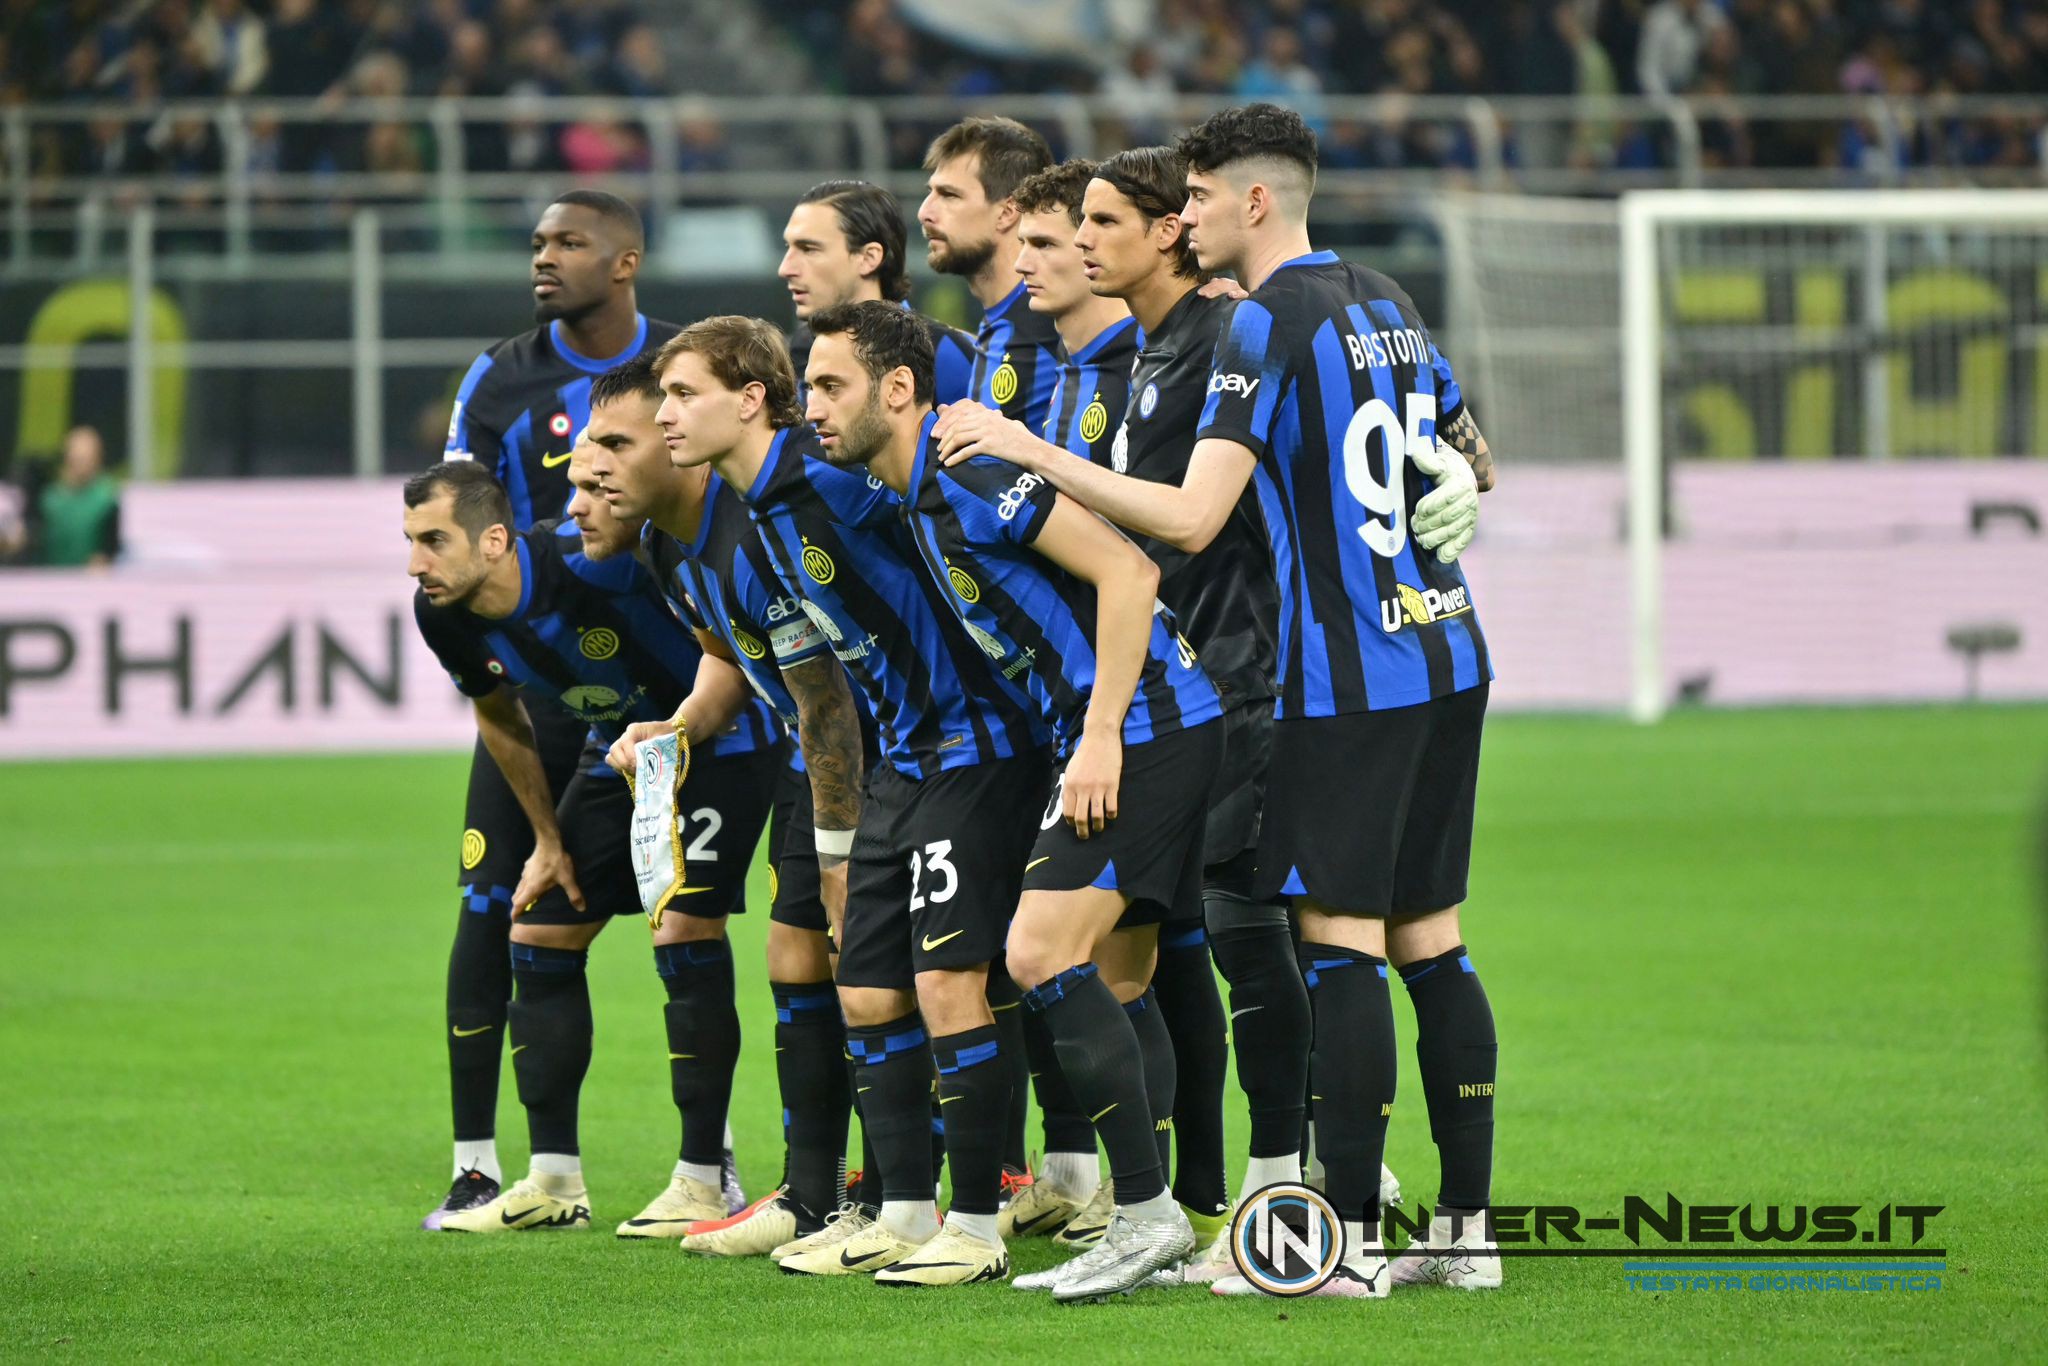 Inter-Napoli (Photo by Tommaso Fimiano/Inter-News.it ©)